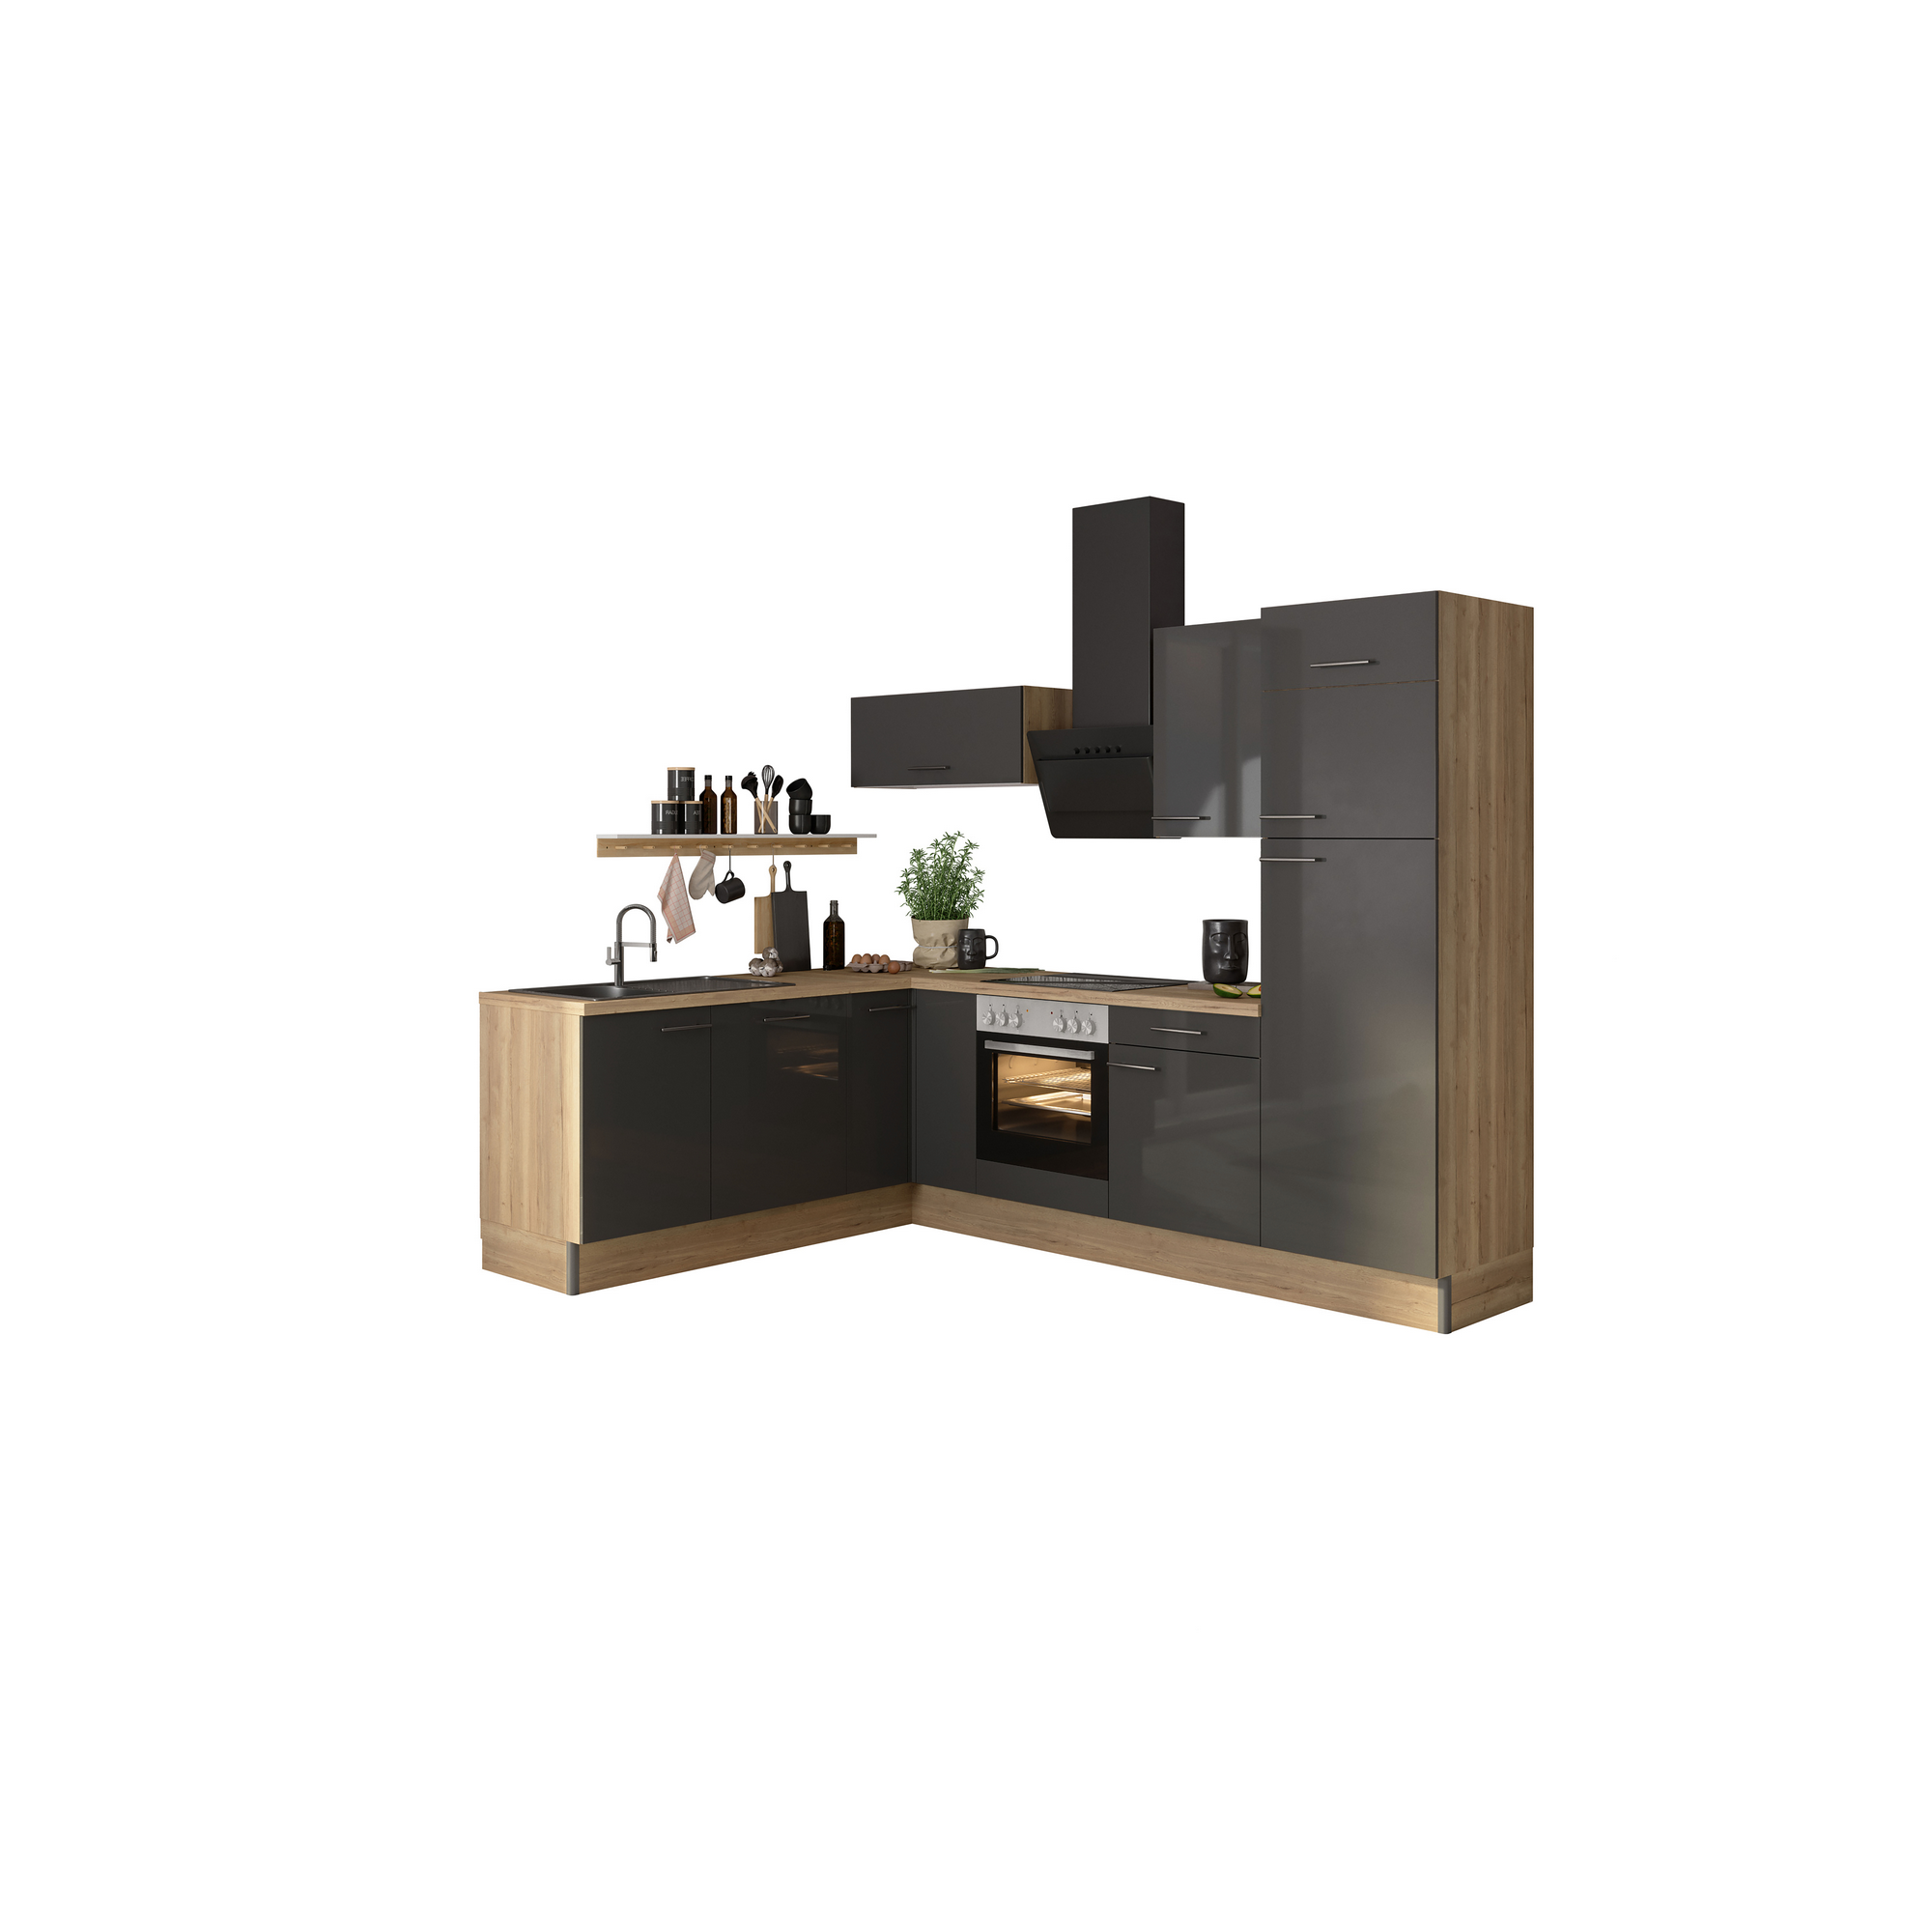 Winkelküche mit E-Geräten 'OPTIkoncept Jonte984' anthrazit/eichefarben 270 cm + product picture